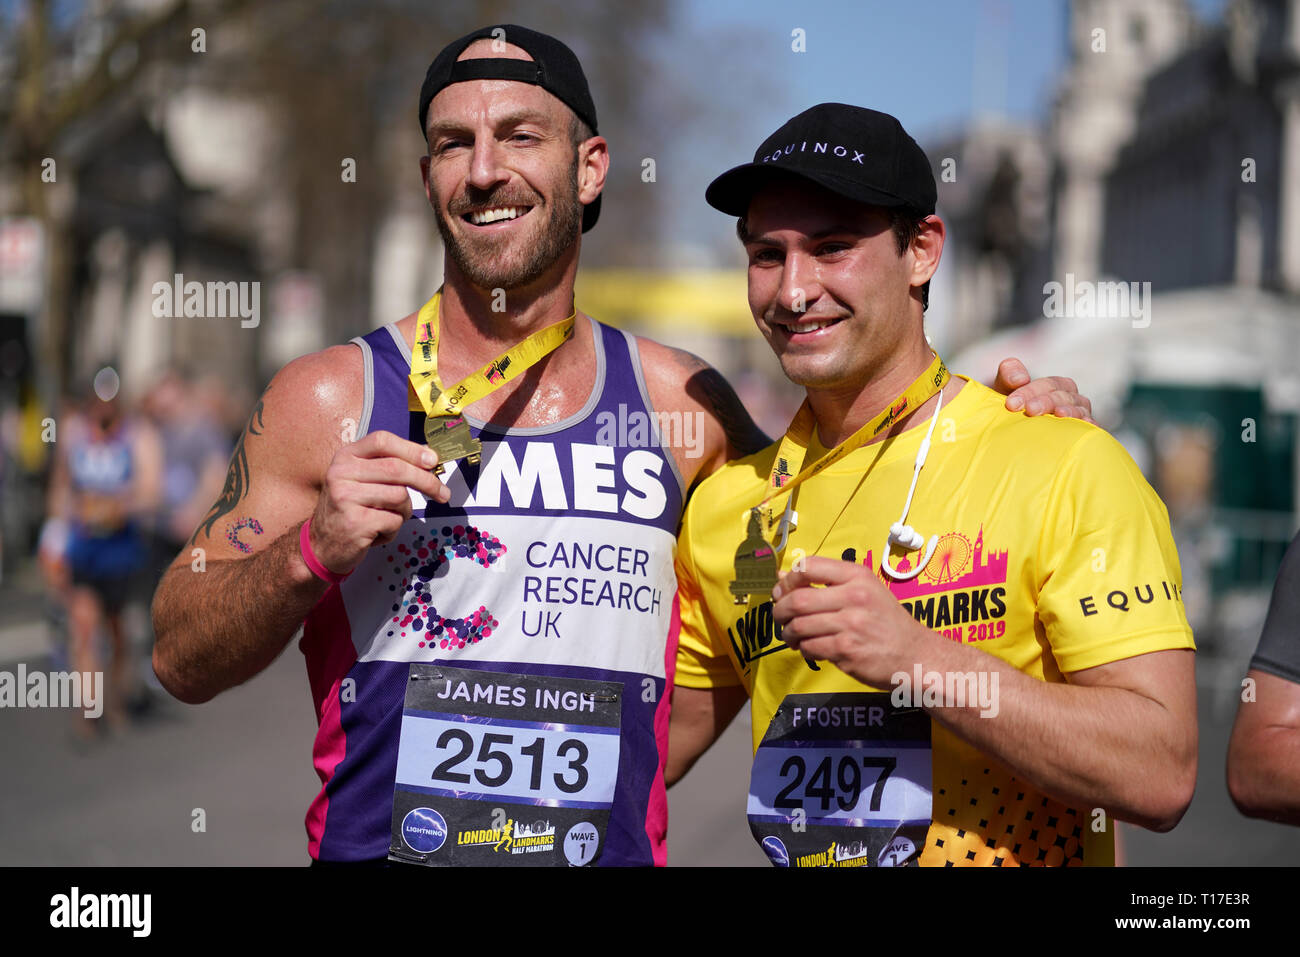 James Ingh und Frankie Foster pose mit Medaillen nach 2019 Wahrzeichen Londons Halbmarathon. Stockfoto